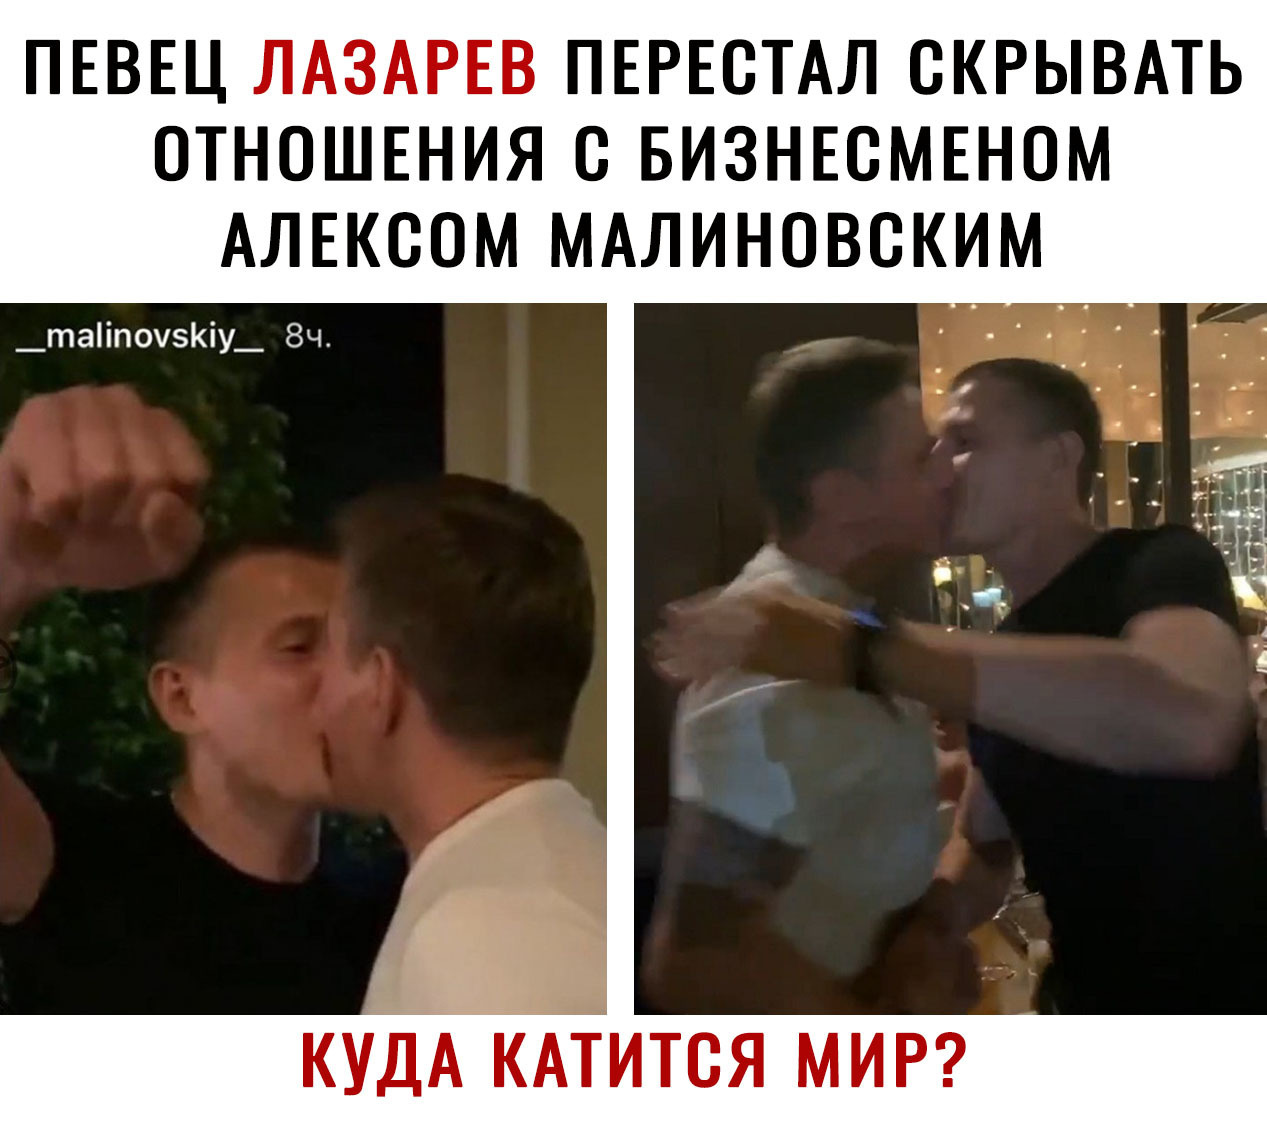 лазарев и малиновский вместе целуются фото